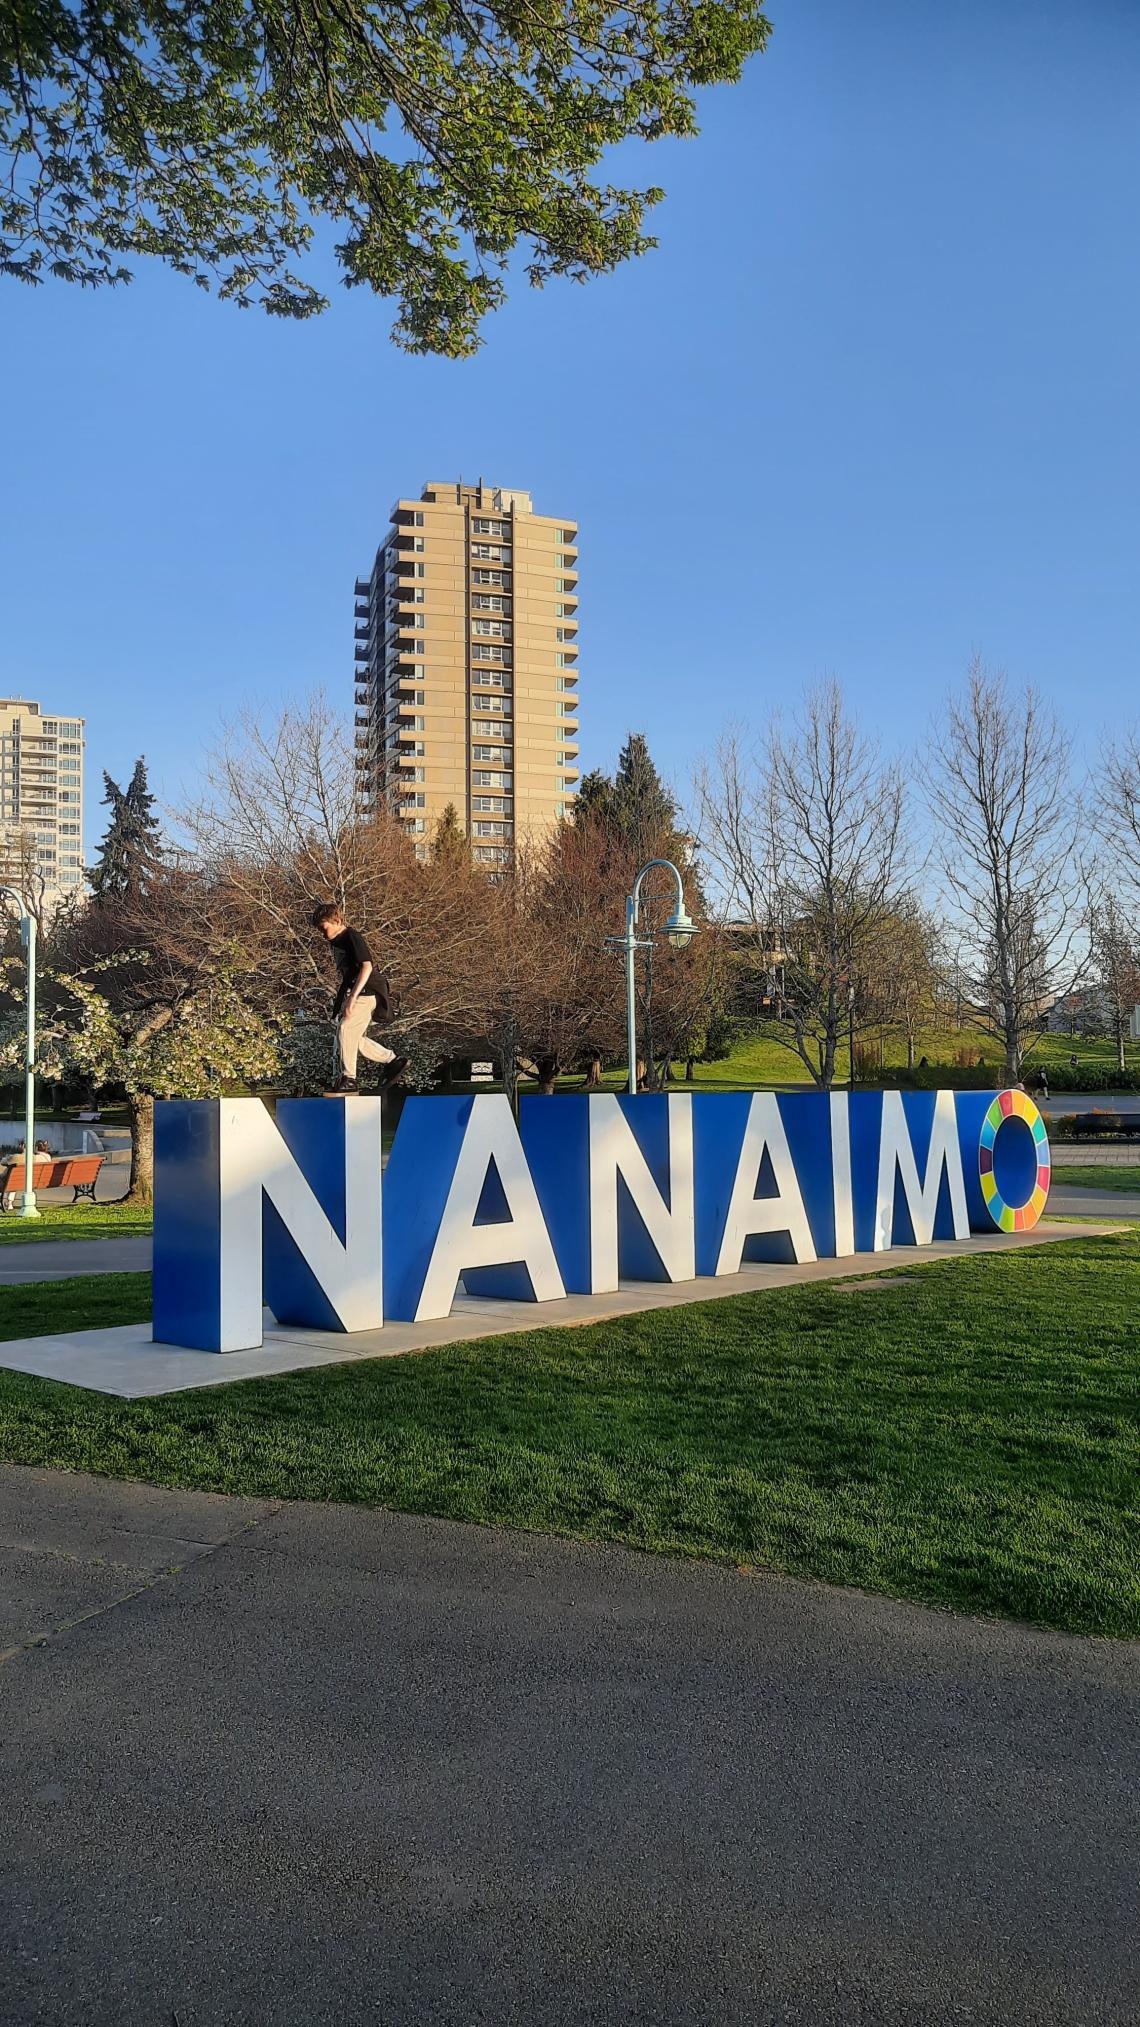 Nanaimo sign in Maffeo Sutton Park